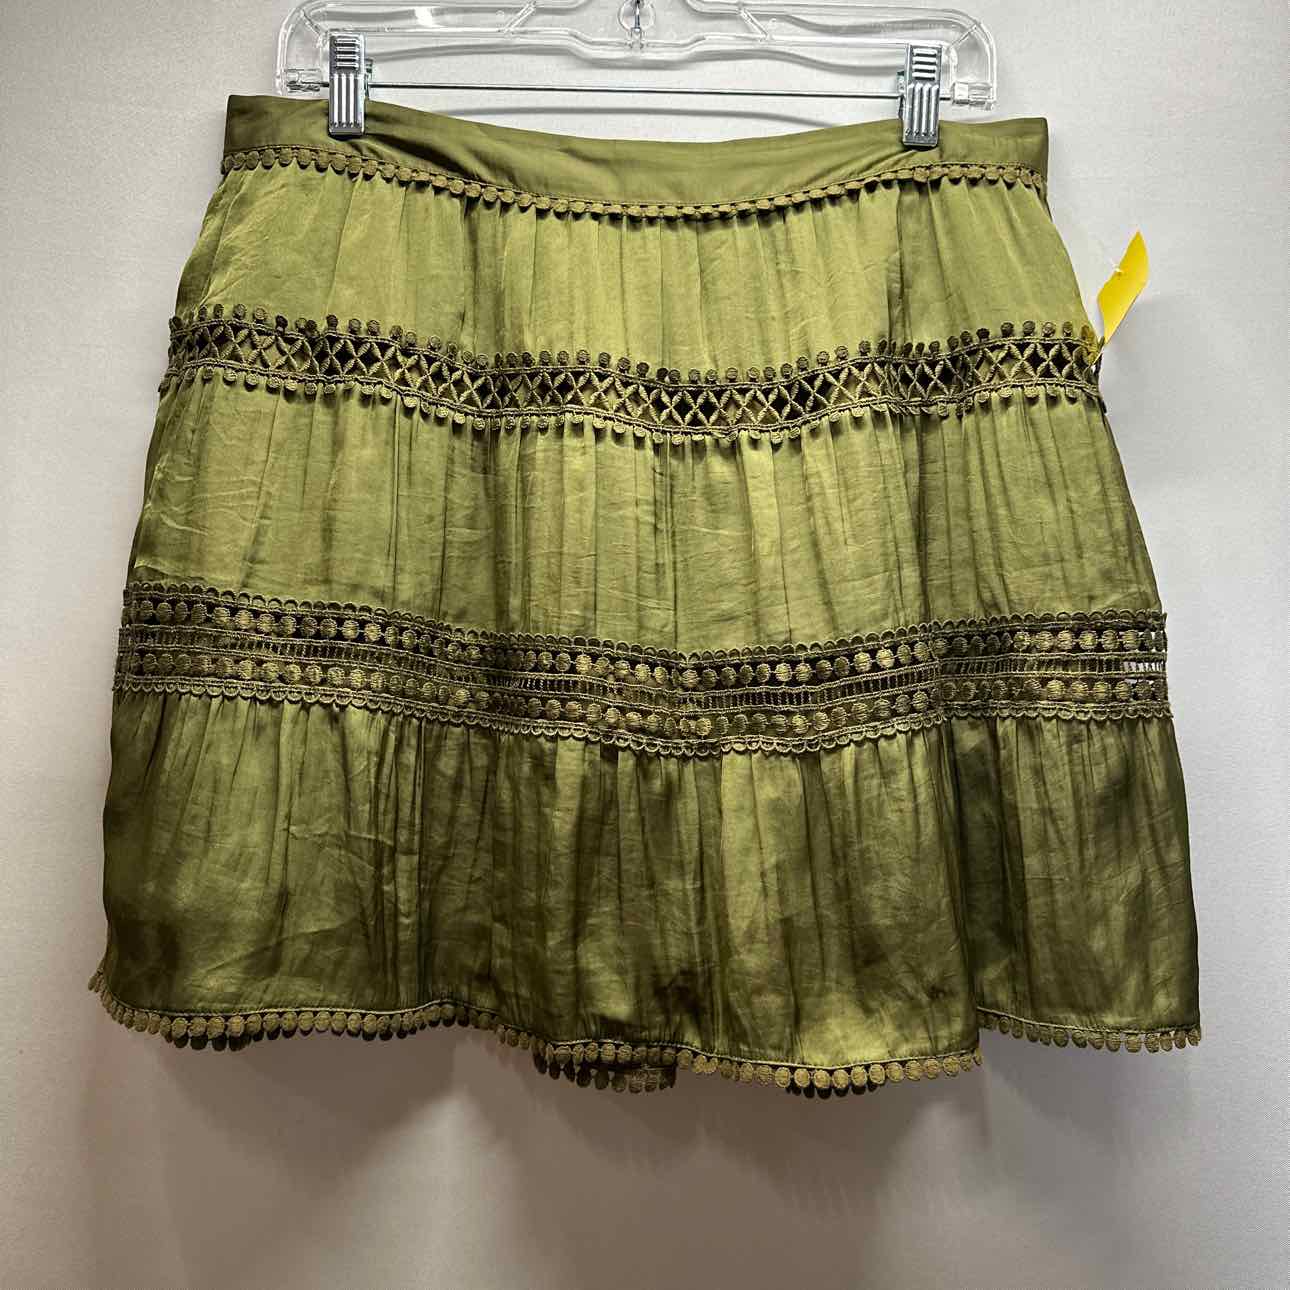 White House Black Market Olive Green Skirt